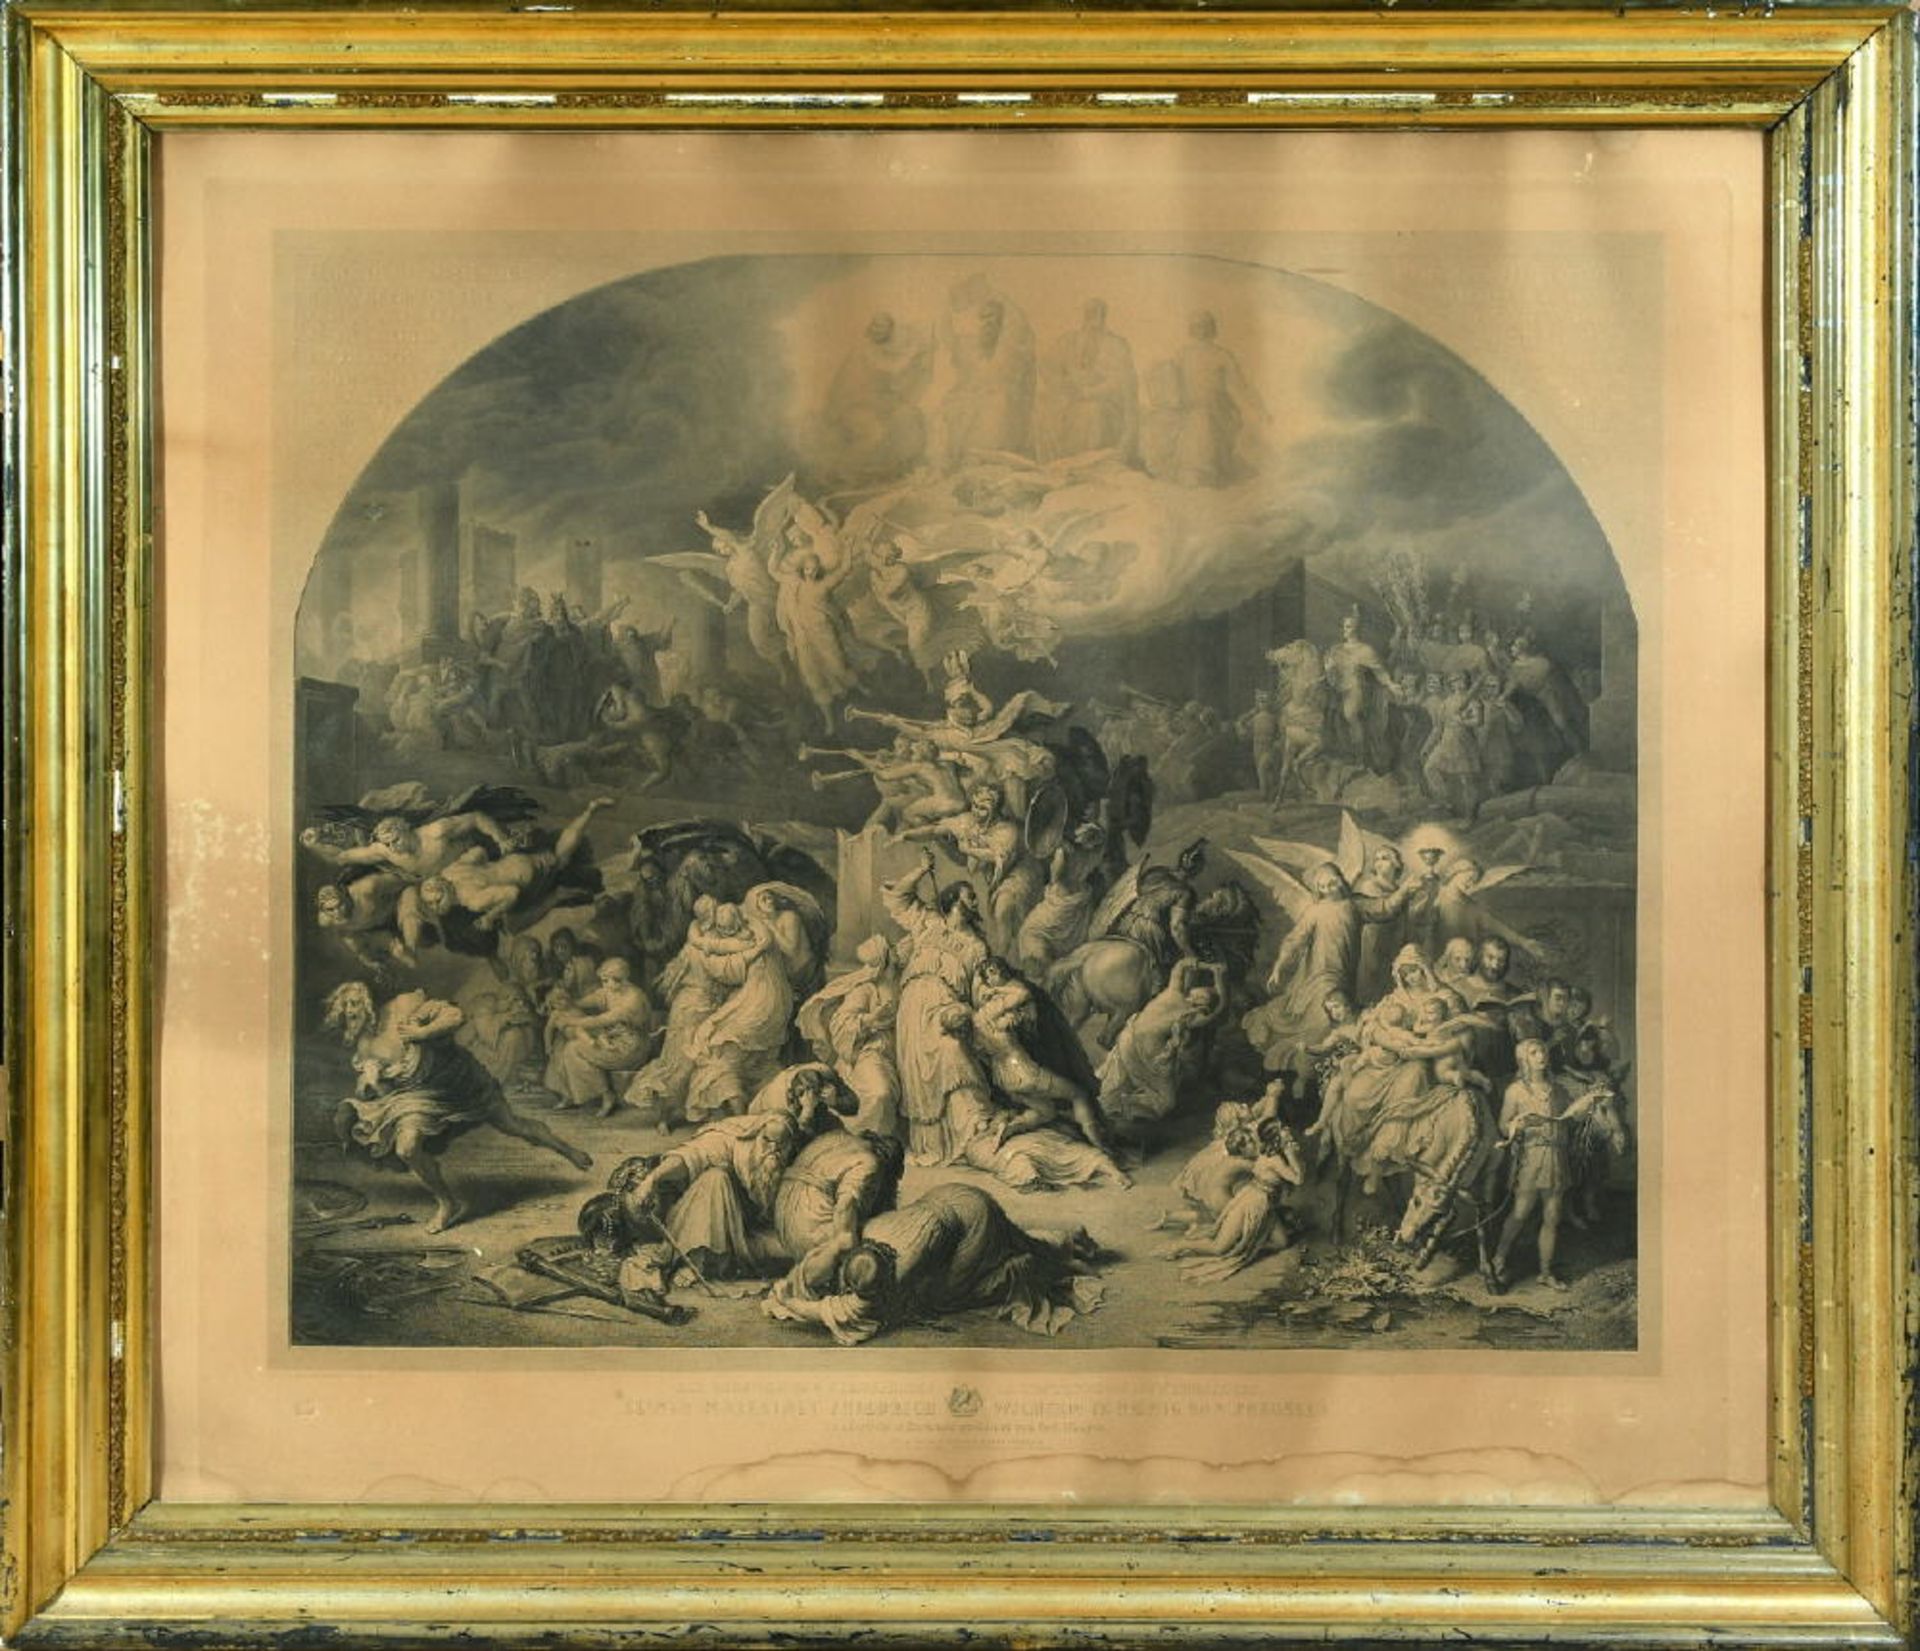 Merz, Heinrich (Kaspar Heinrich), 1806 St.Gallen - 1875 KufsteinStahlstich, 72 x 85 cm, " Zerstörung